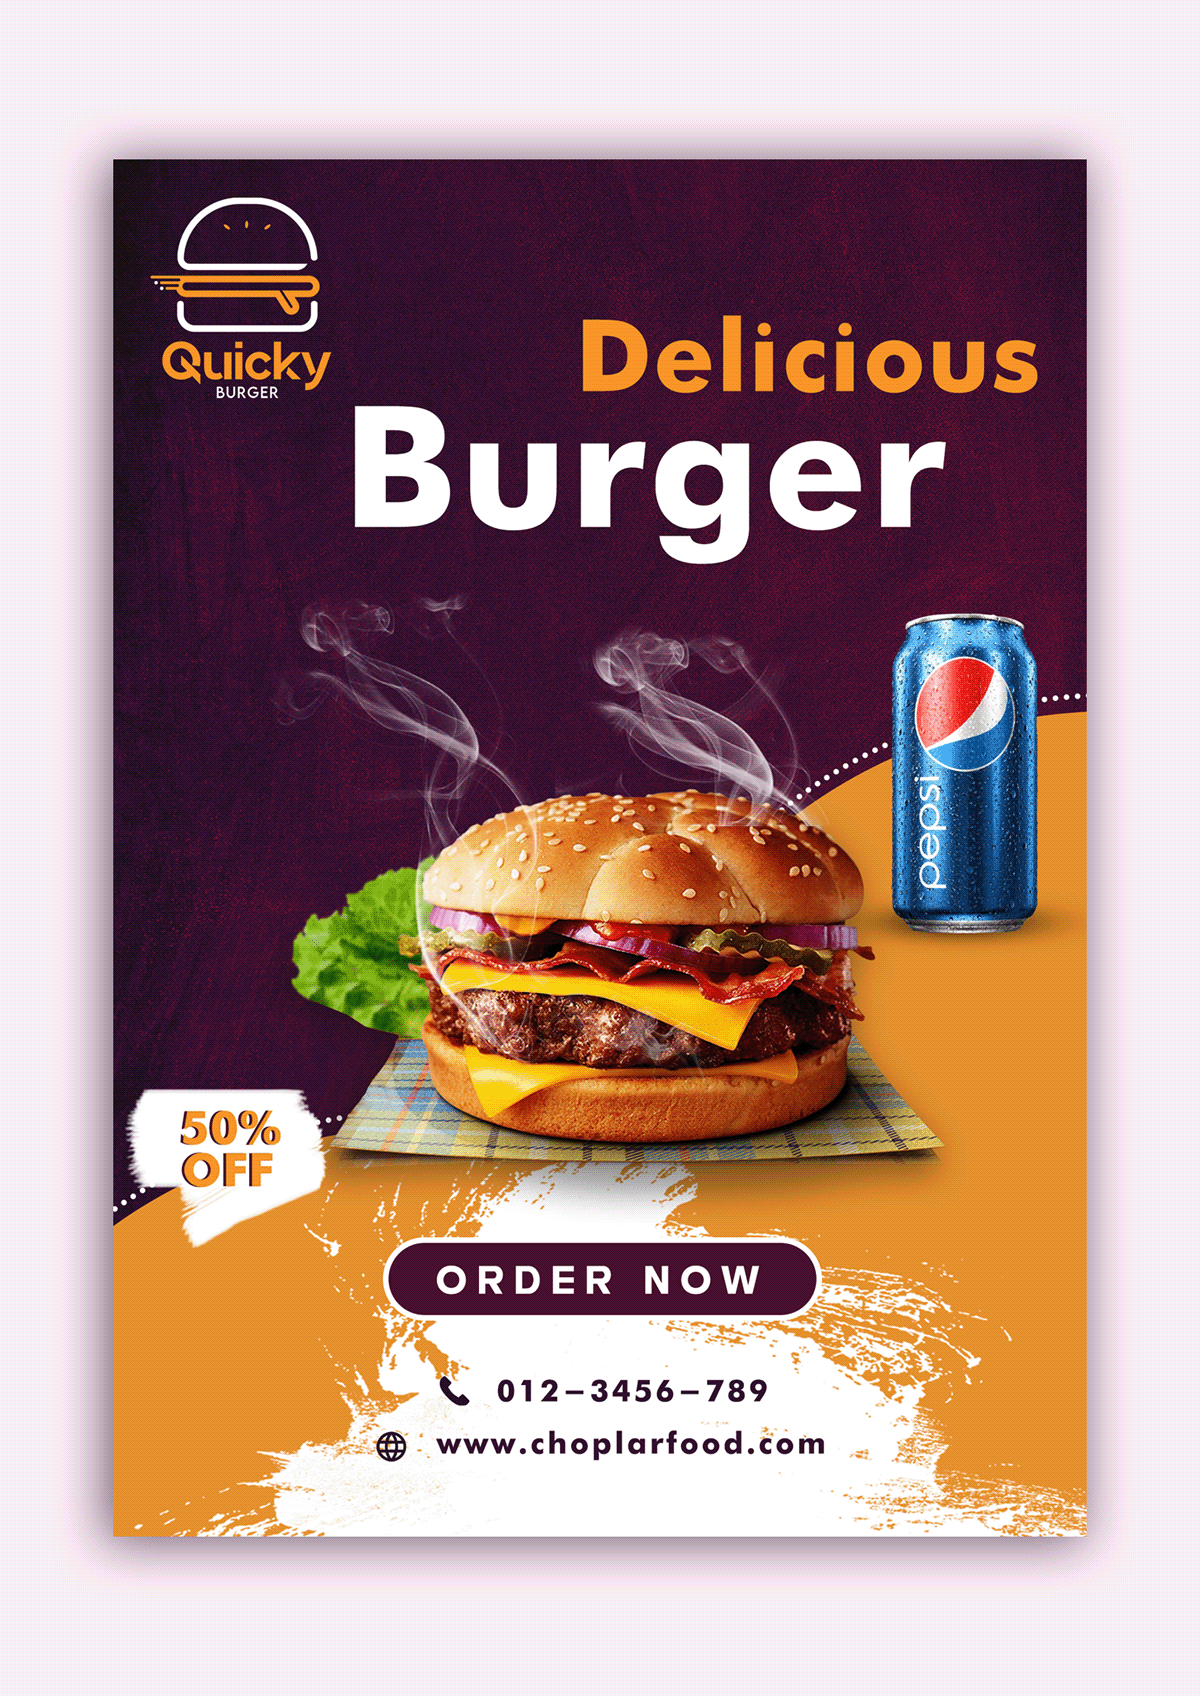 burger design graphic photoshop retouch